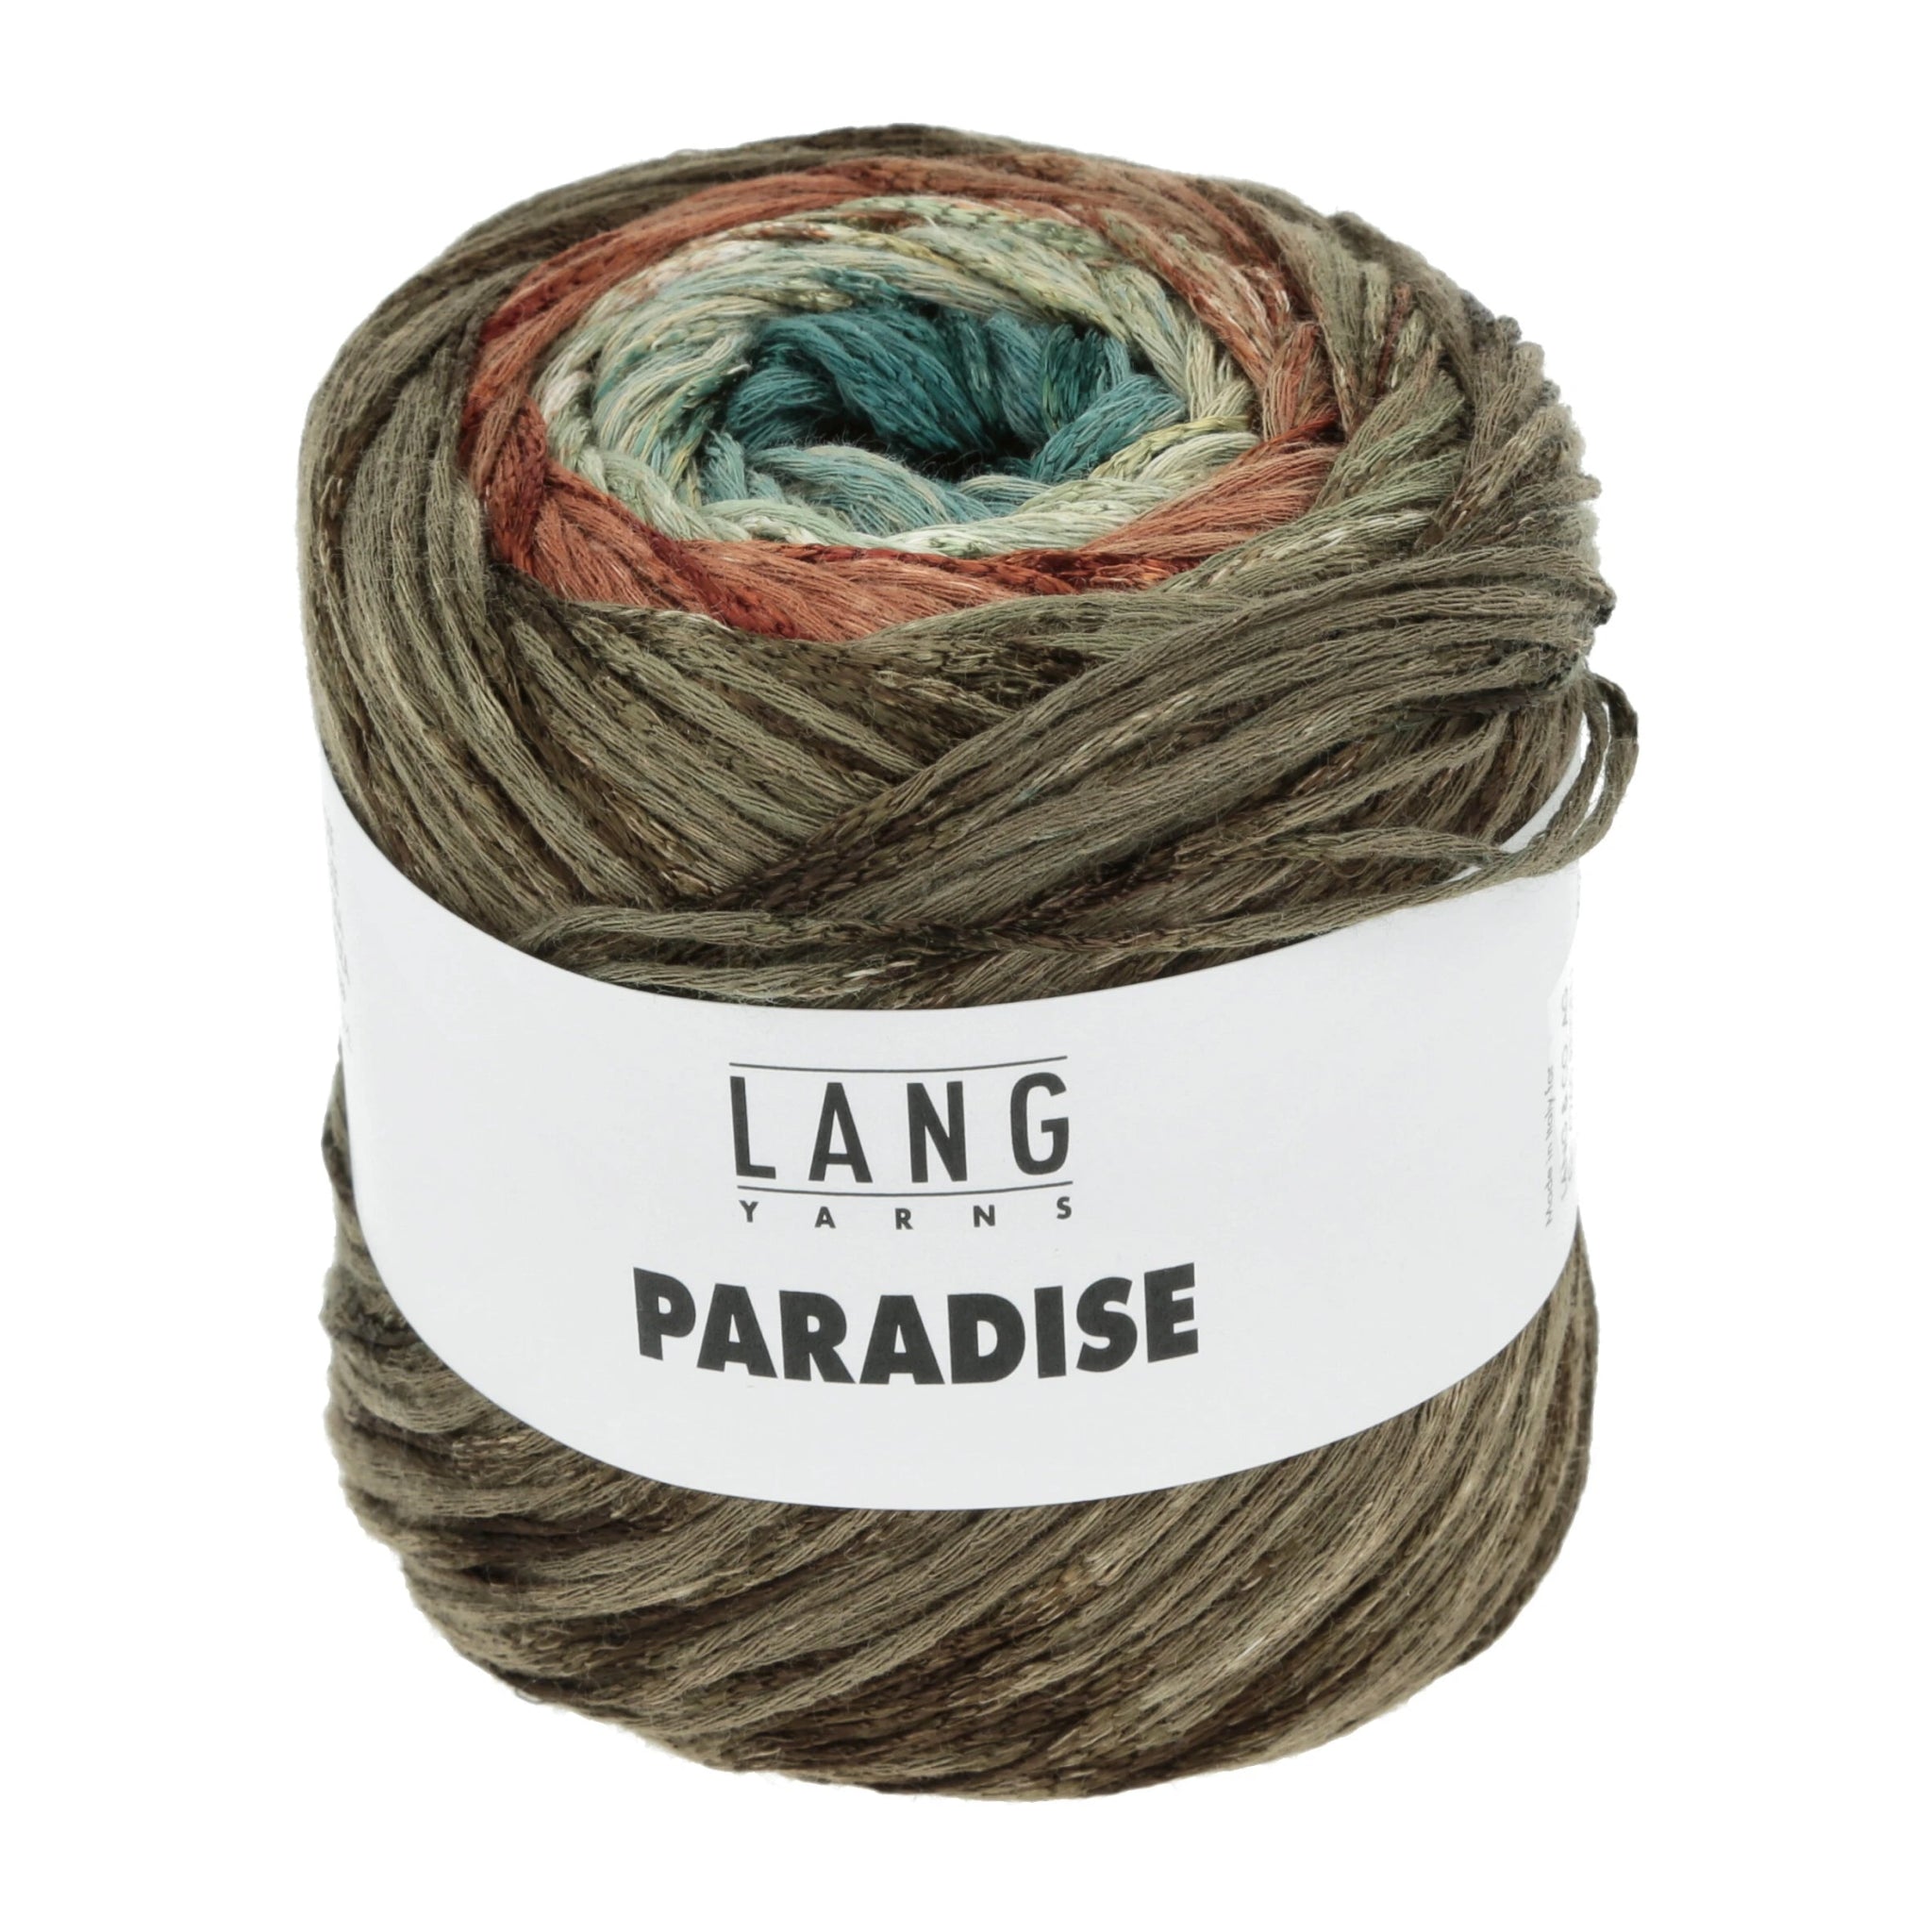 PARADISE von LANG YARNS jetzt online kaufen bei OONIQUE